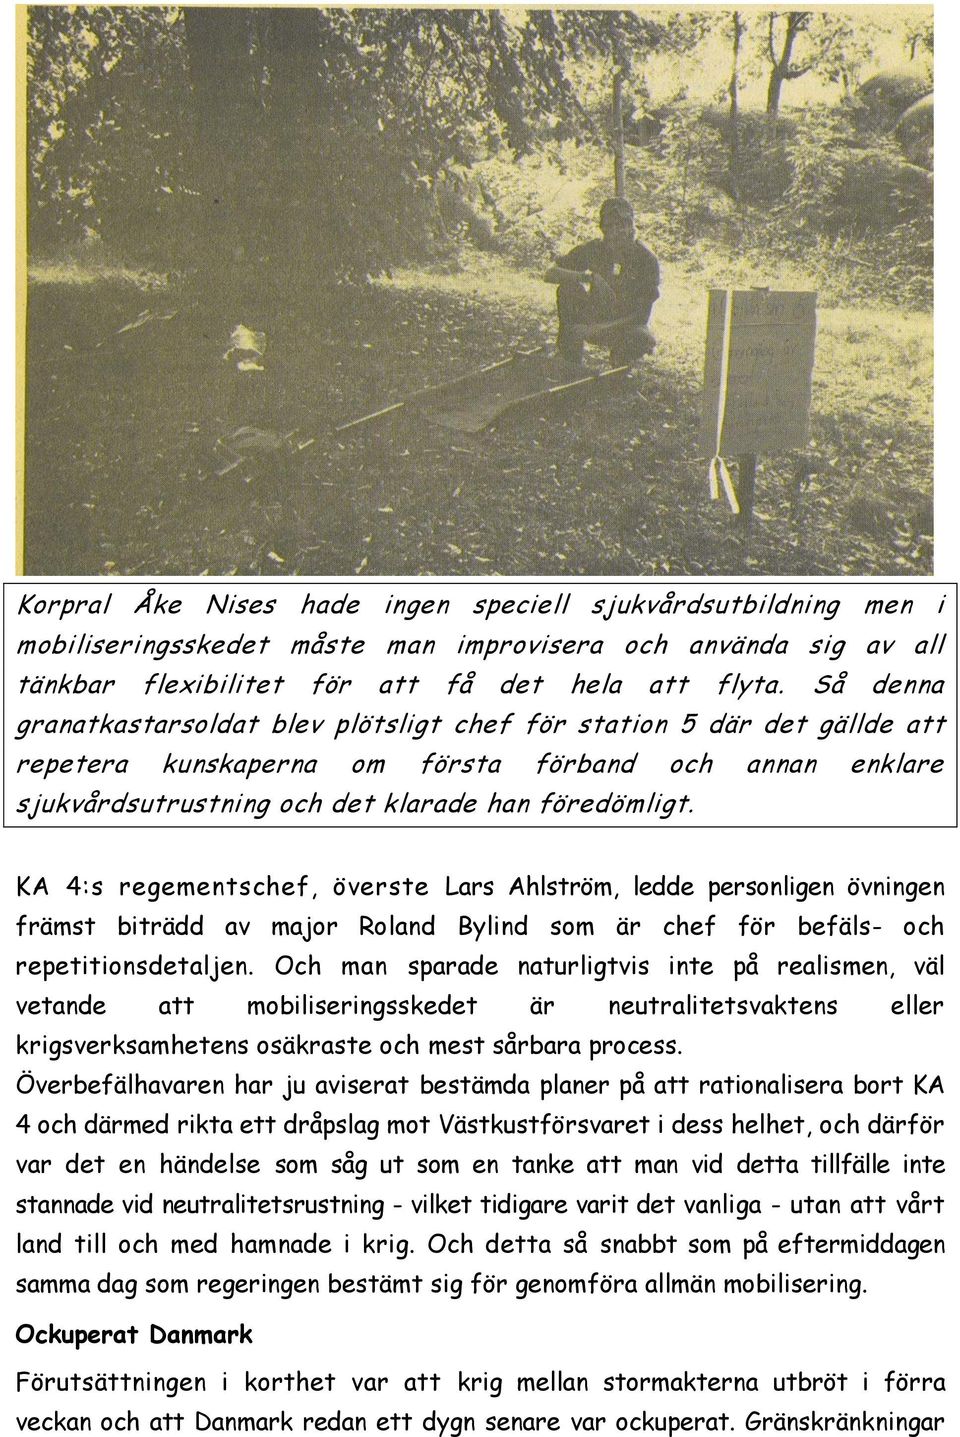 KA 4:s regementschef, överste Lars Ahlström, ledde personligen övningen främst biträdd av major Roland Bylind som är chef för befäls- och repetitionsdetaljen.